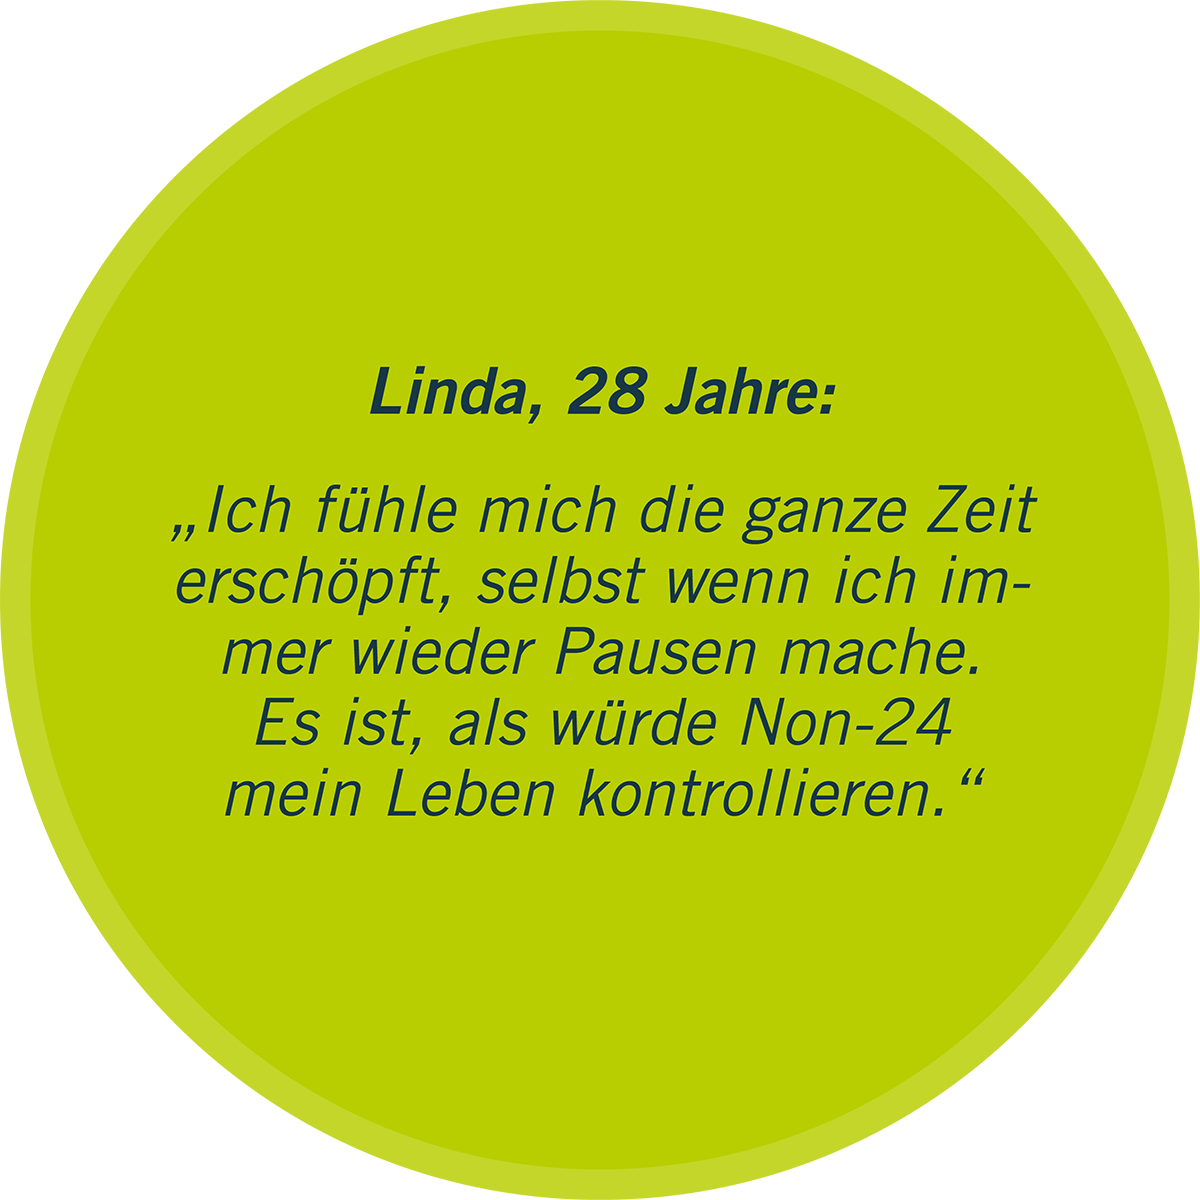 Zu sehen ist in einer grünen Sprechblase ein Statement von Linda, 28 Jahre: „Ich fühle mich die ganze Zeit erschöpft, selbst wenn ich immer wieder Pausen mache. Es ist, als würde Non-24 mein Leben kontrollieren.“